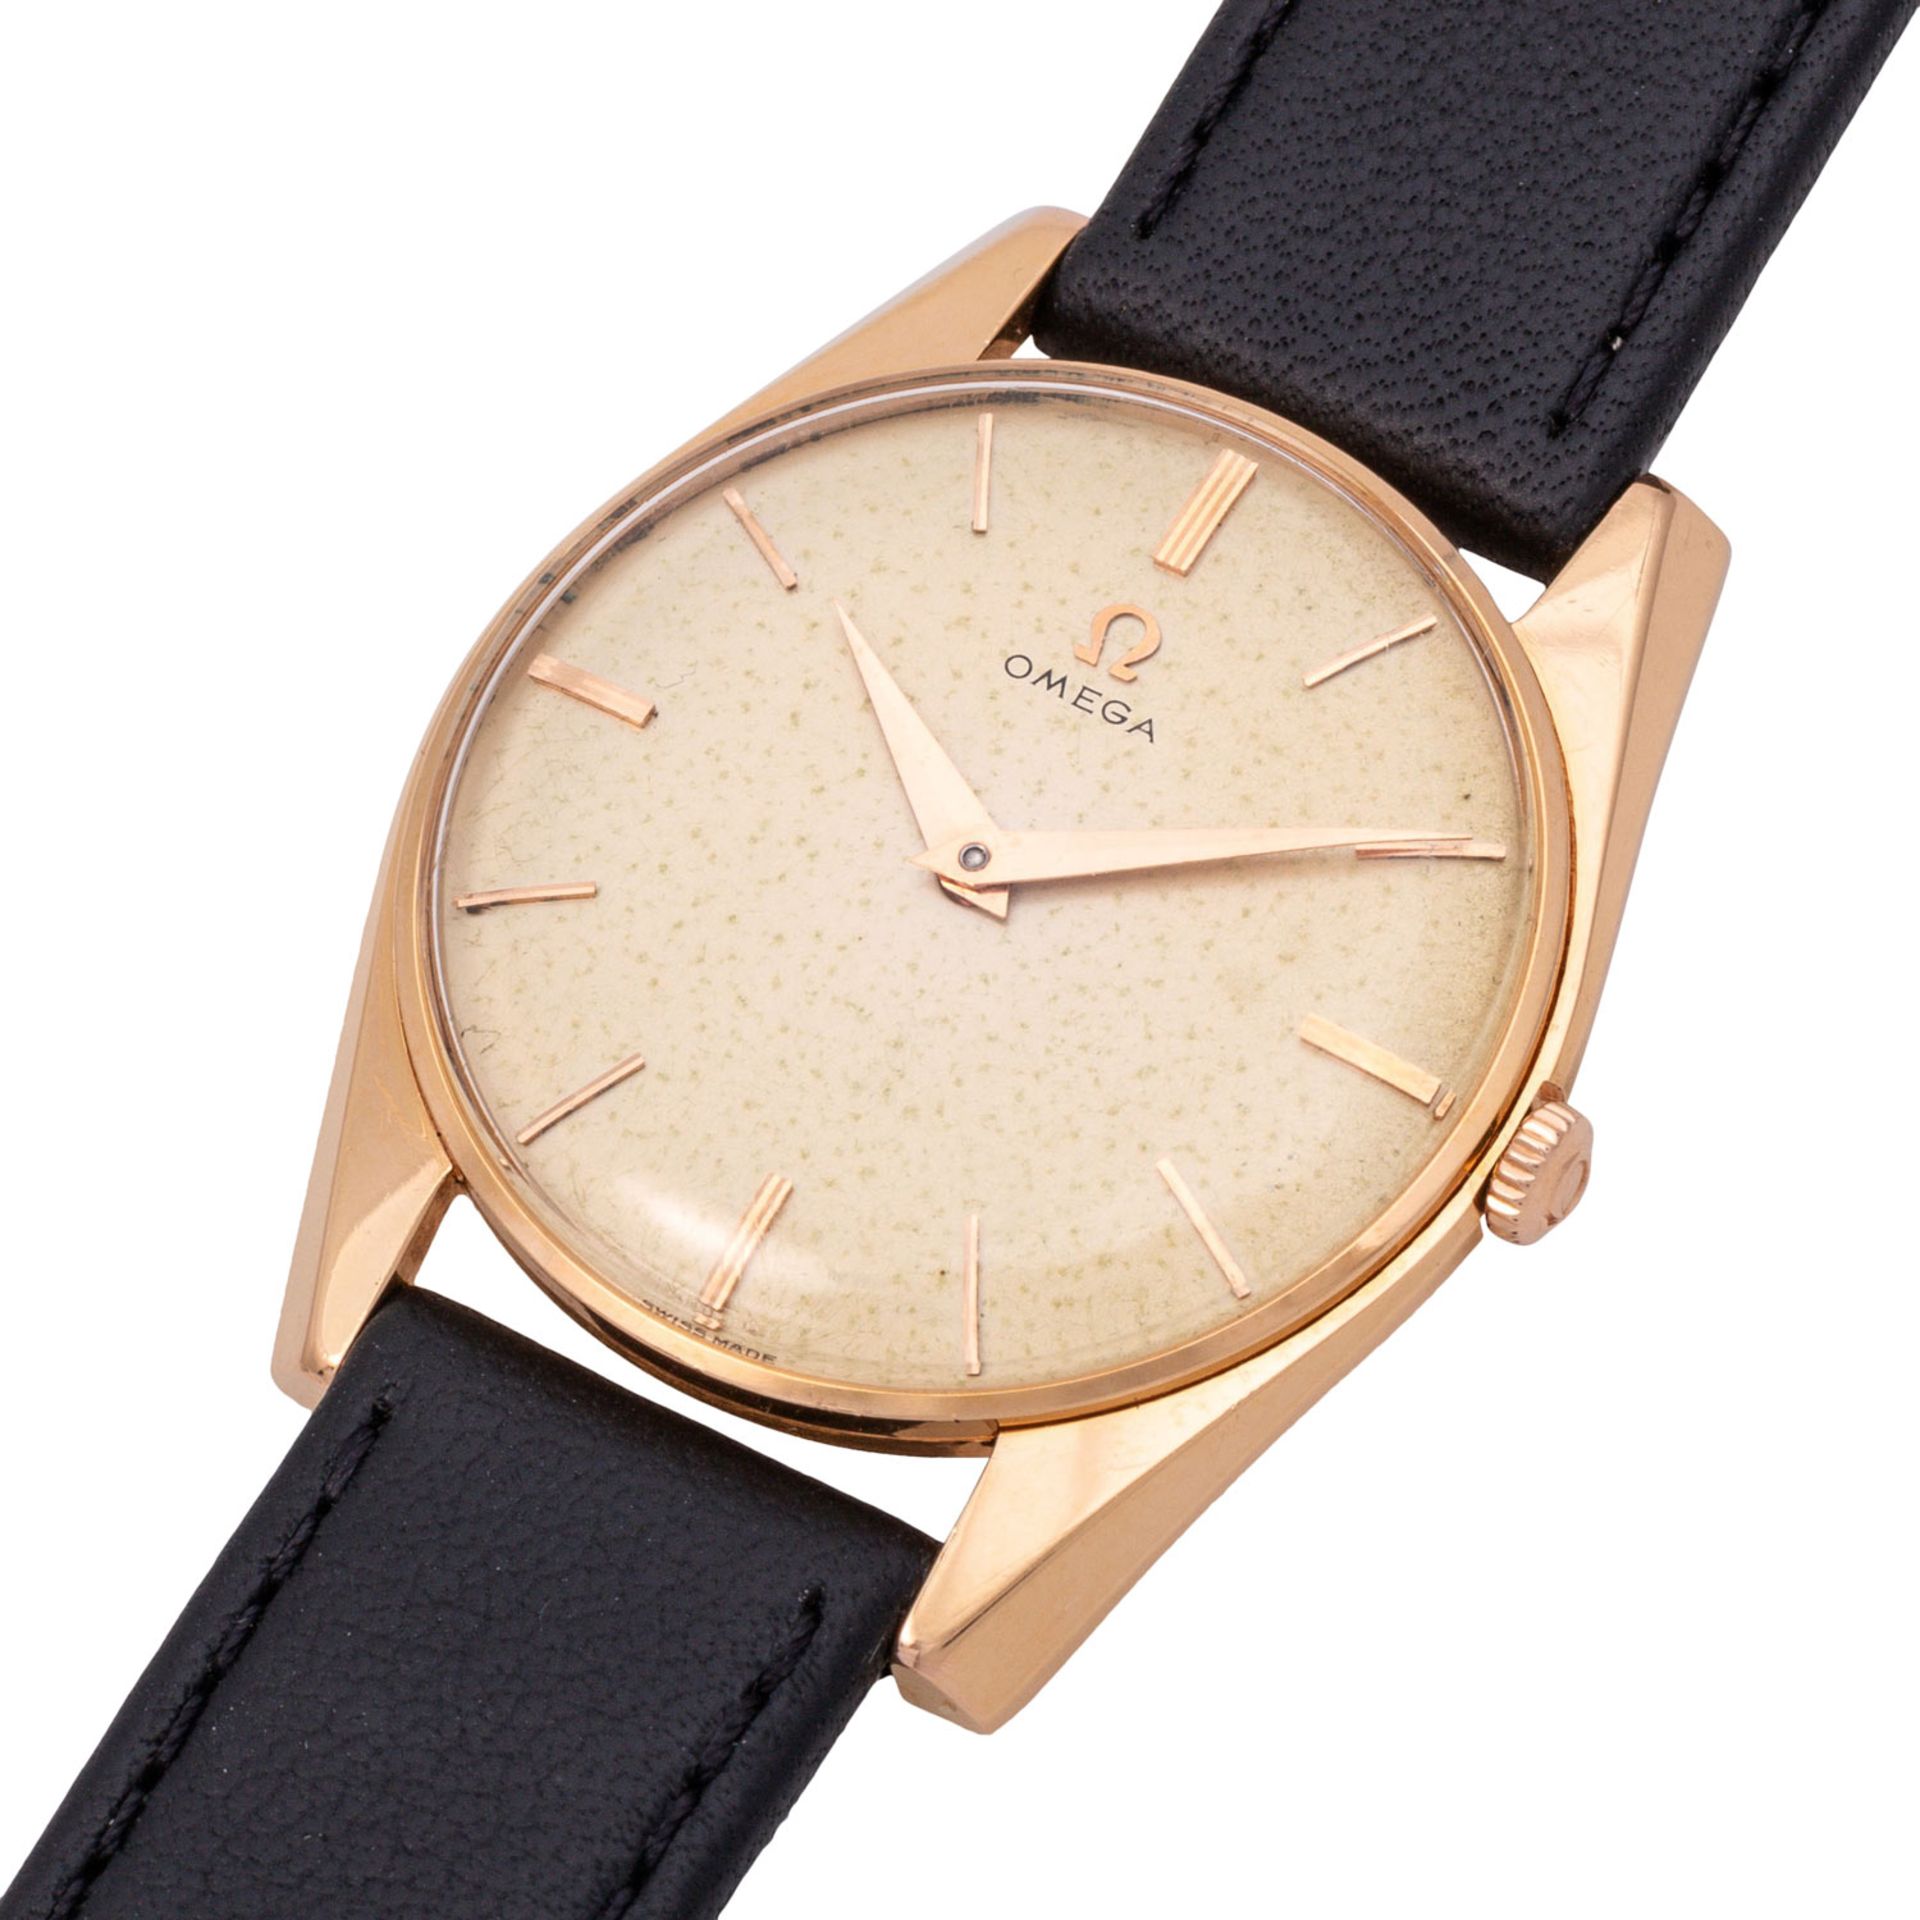 OMEGA Vintage Herren Armbanduhr Ref. 14366 von ca. 1958-1960. - Bild 5 aus 7